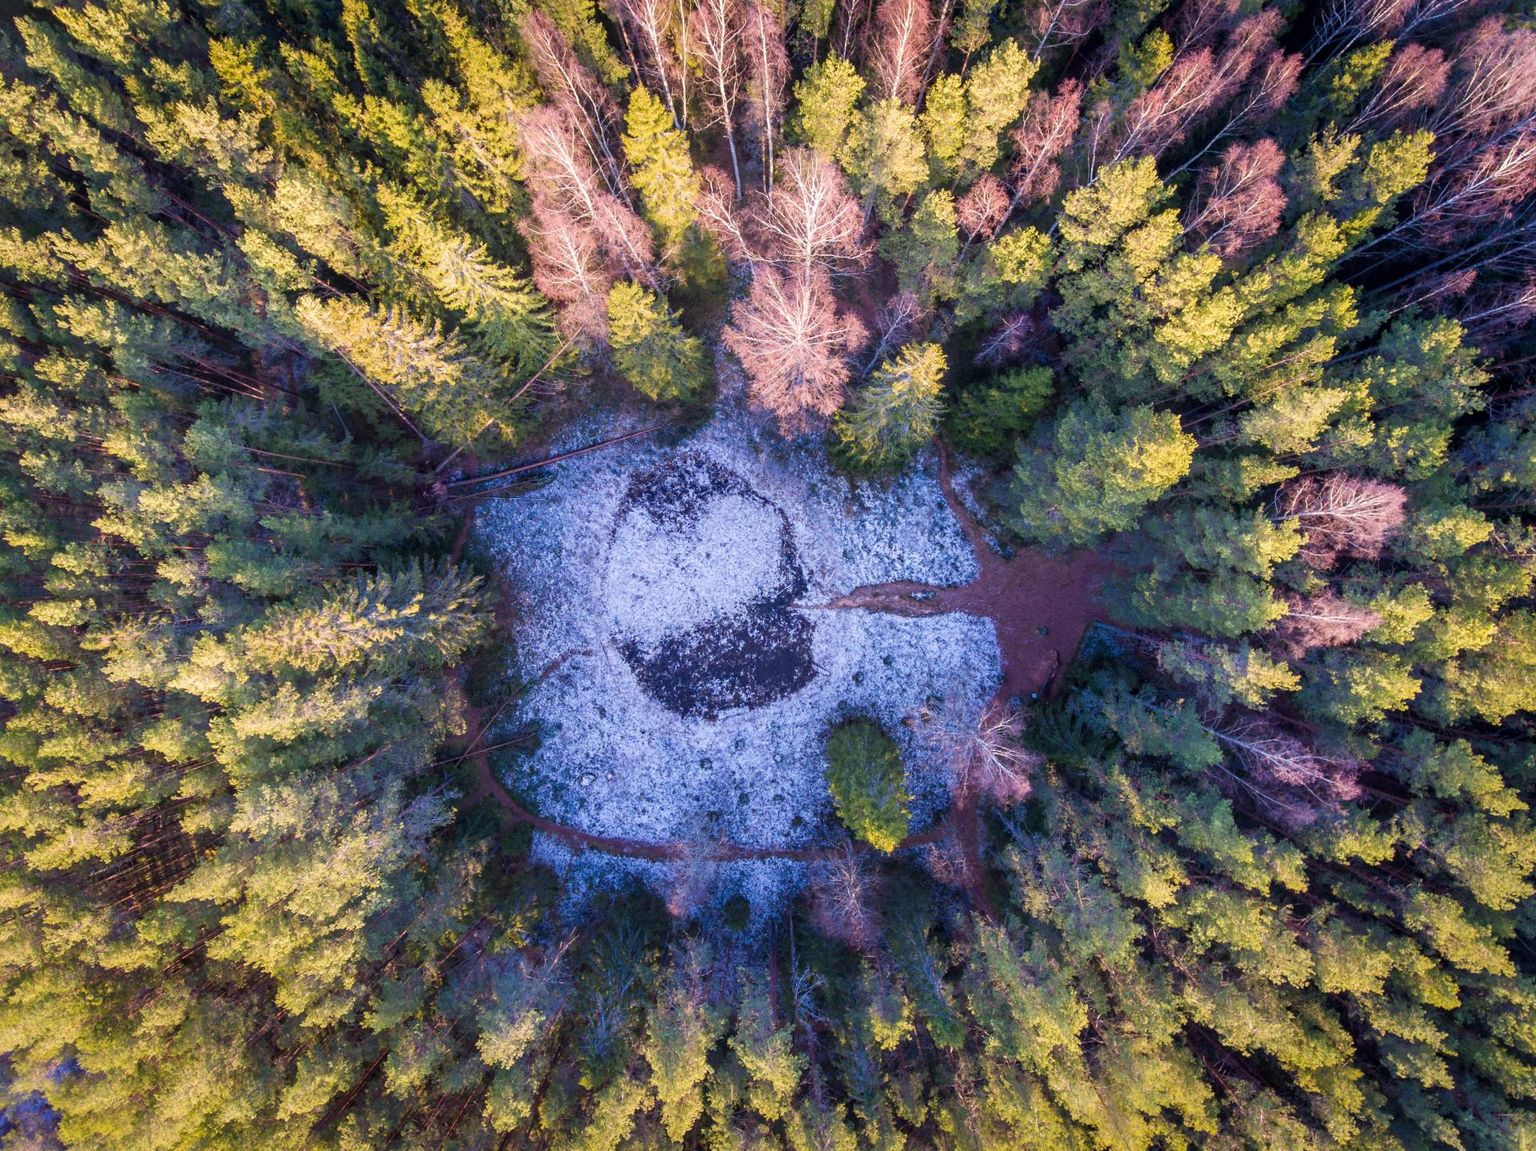 Põlvamaa, Ilumetsa 12.12.2019

Ilumetsa meteoriidikraater Põlvamaal.
Loodus, mets, matkarada, vaatamisväärsus

Põrguhaud, põrguvärav on valli servalt 75-80m läbimõõduga ja sügavus 12,5 m. Vanus 6000 aastat.